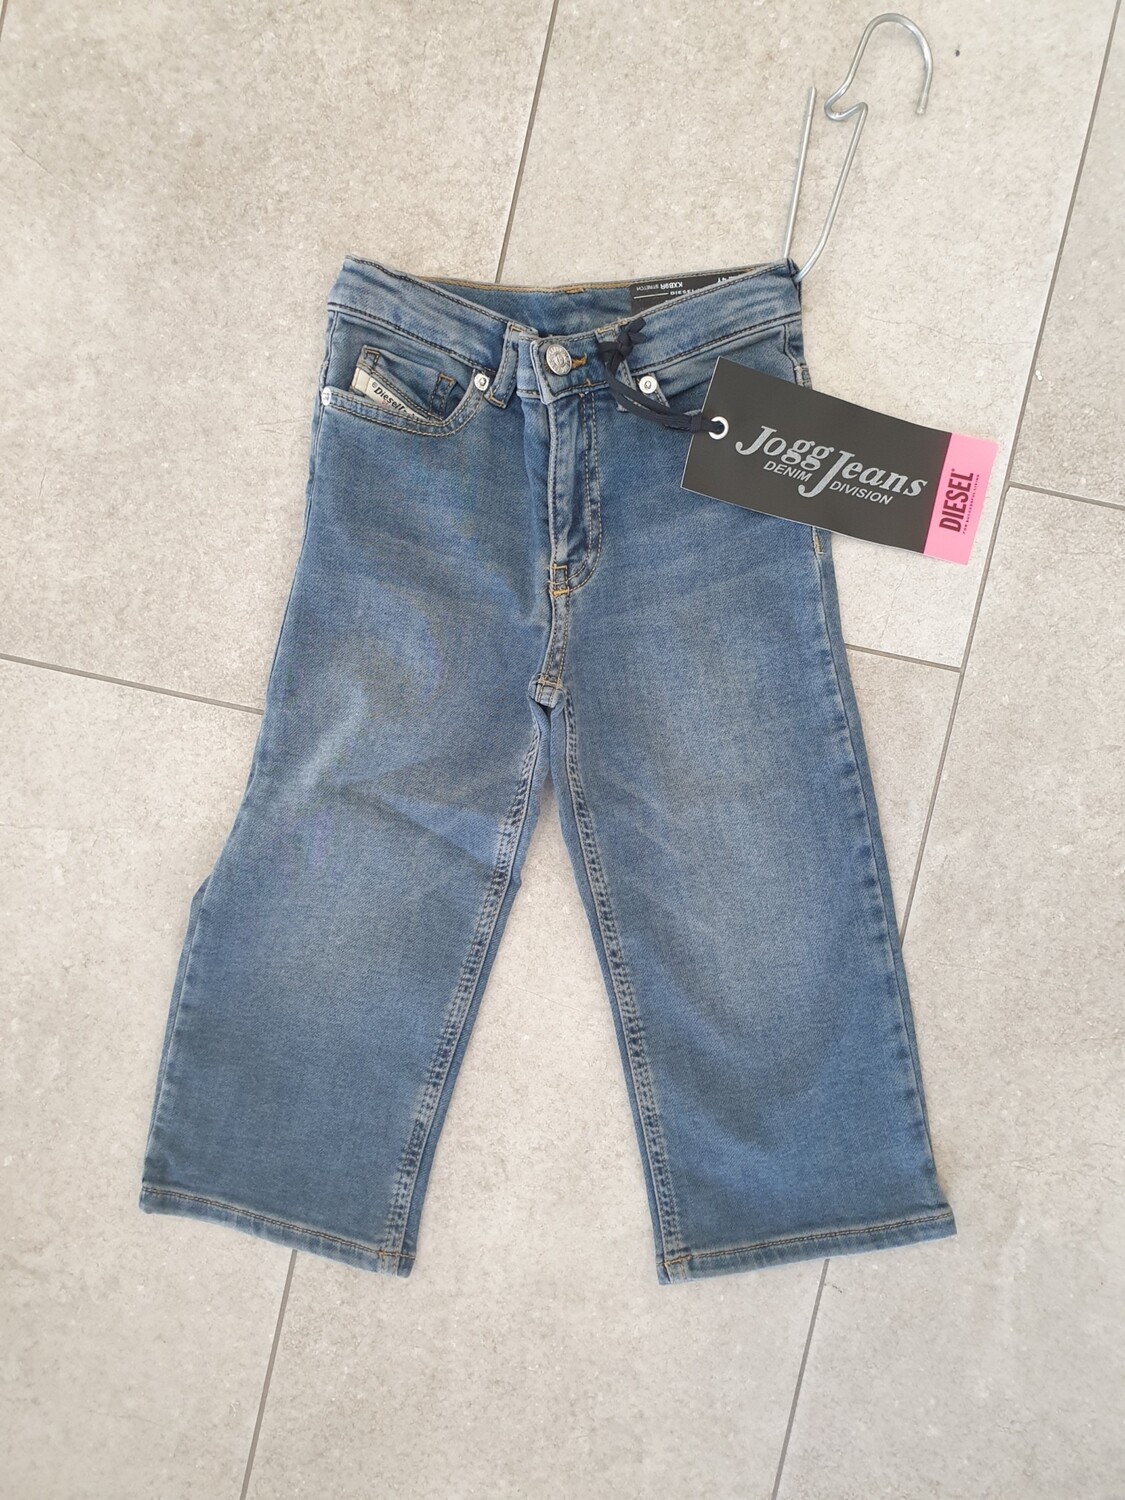 Pantalone jeans WIDEE-JJJJ Diesel